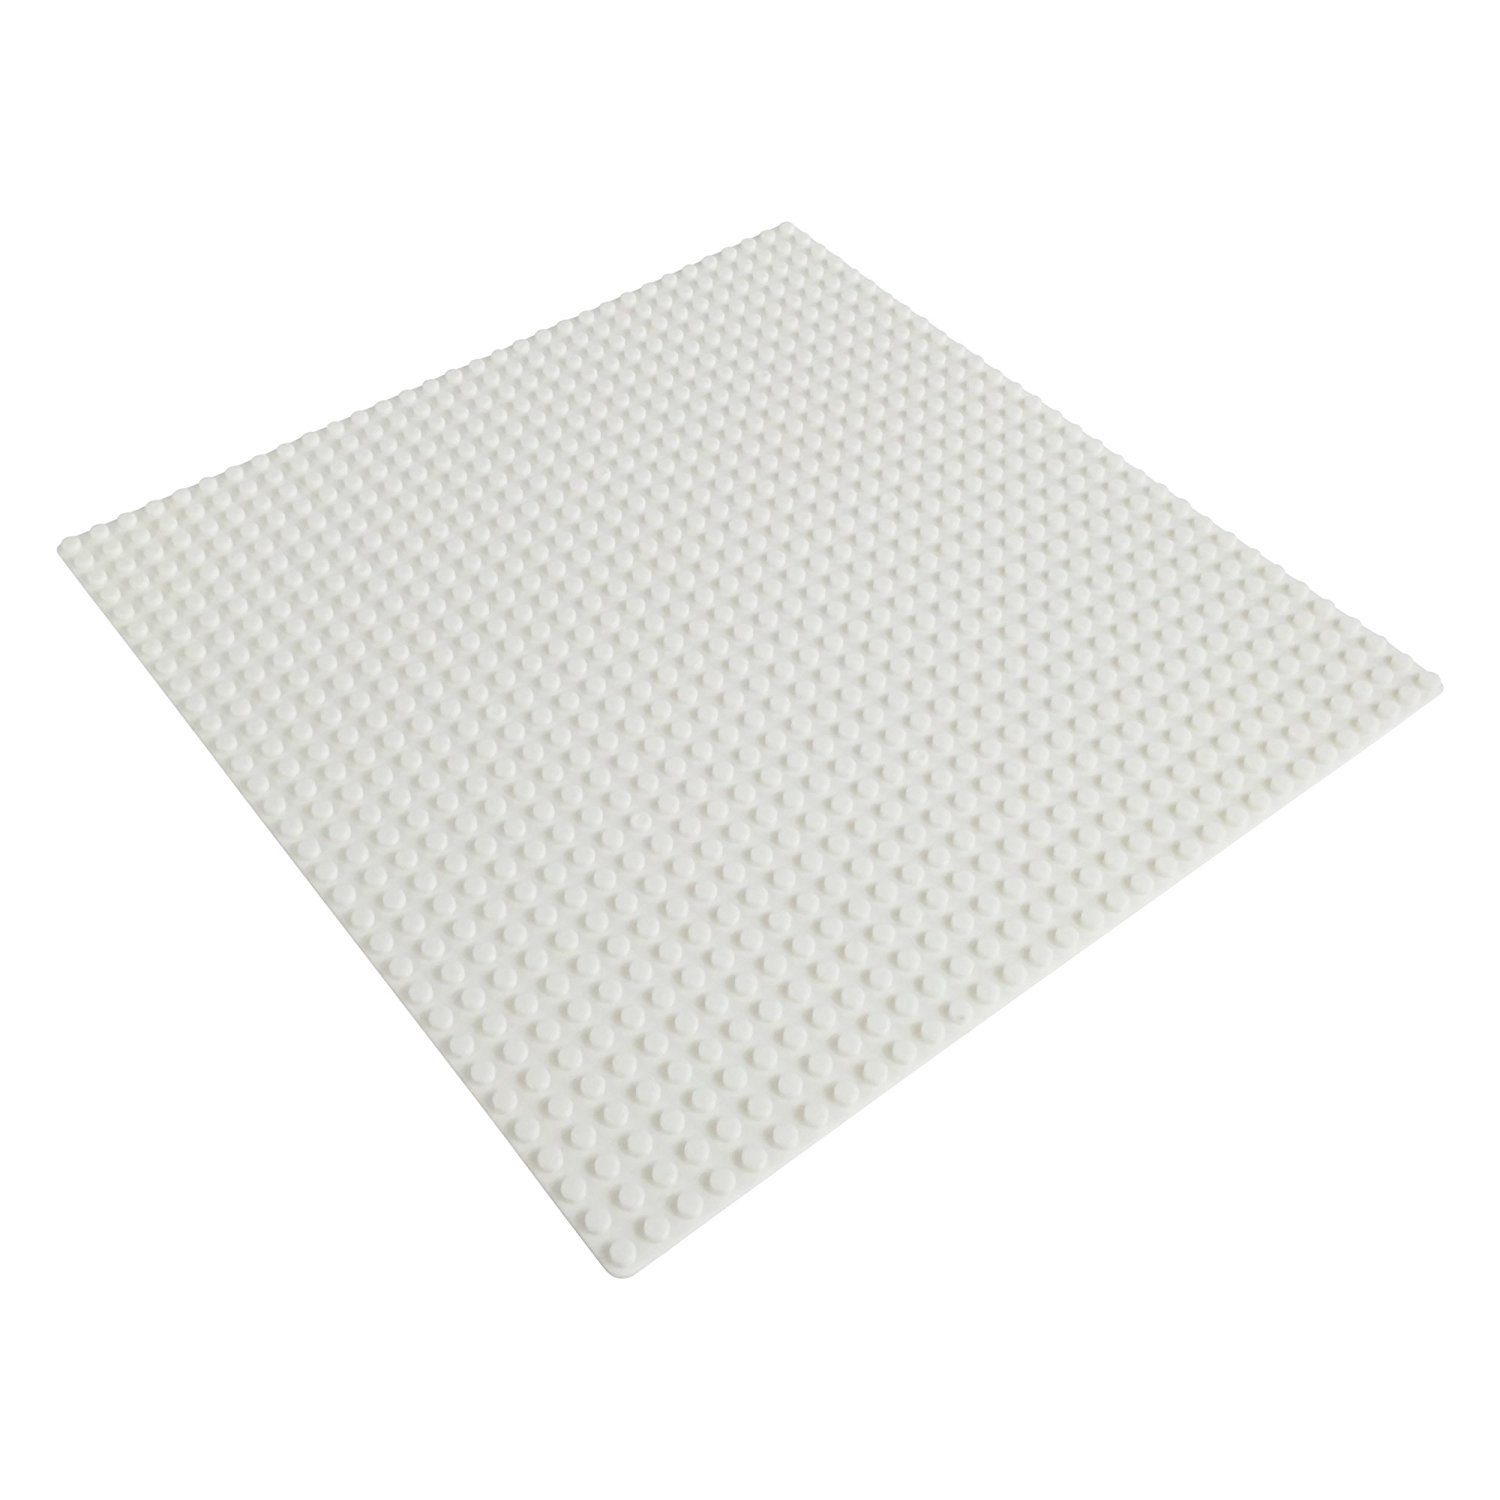 Katara Konstruktionsspielsteine Grundbauplatte 32x32 Noppen, verschiedene Farben, (1er Set), Weiß, 100% Kompatibel Sluban, Papimax, Q-Bricks, LEGO®